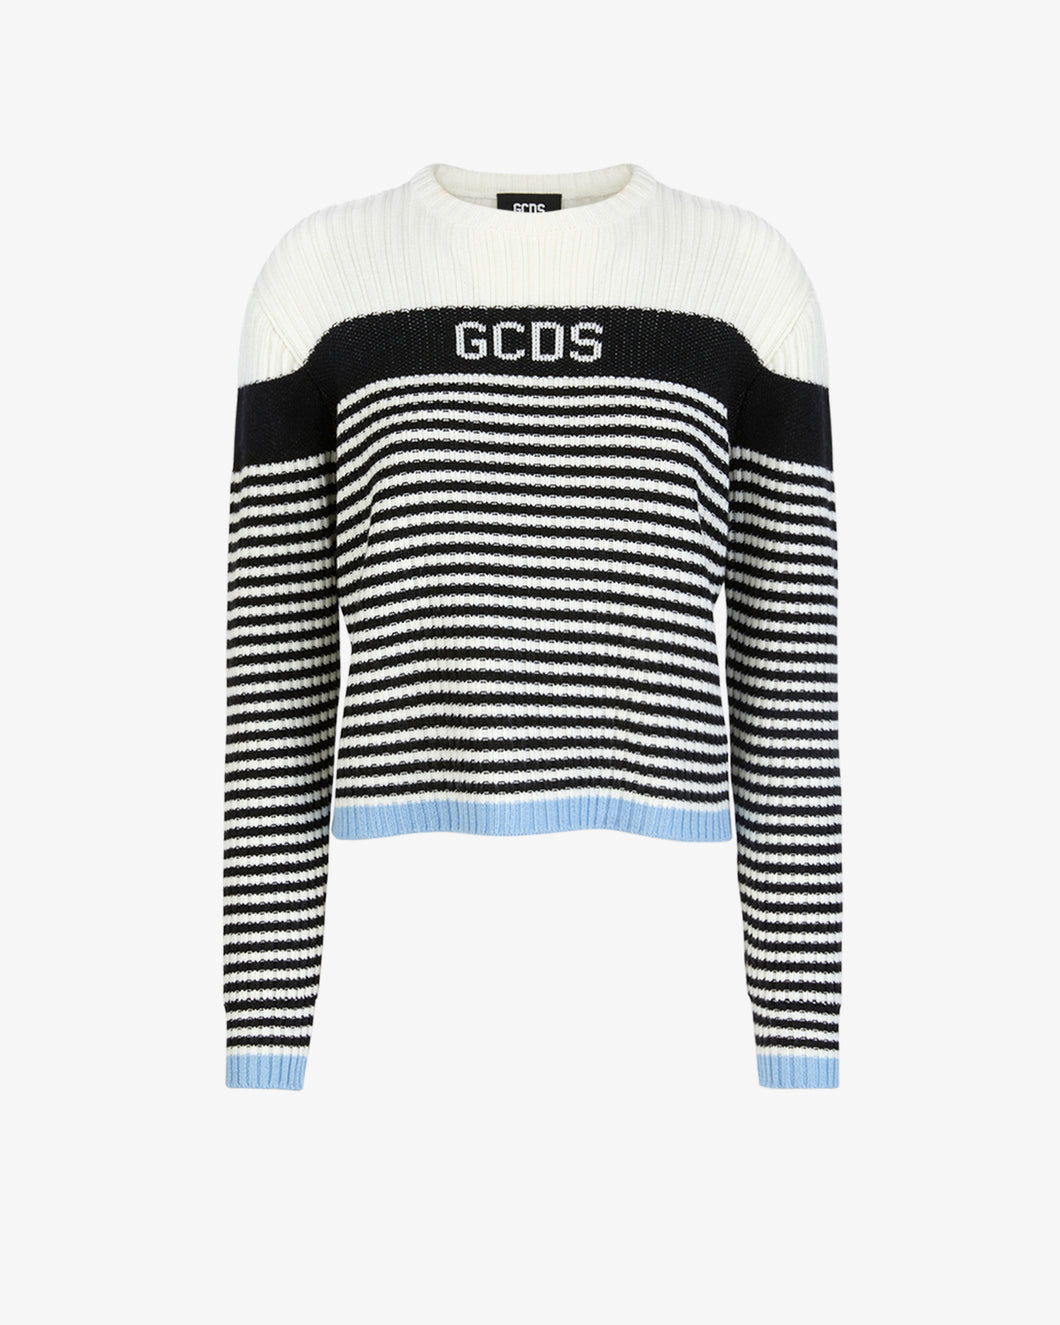 Gcds Striped Sweater | Women Knitwear Multicolor | GCDS®